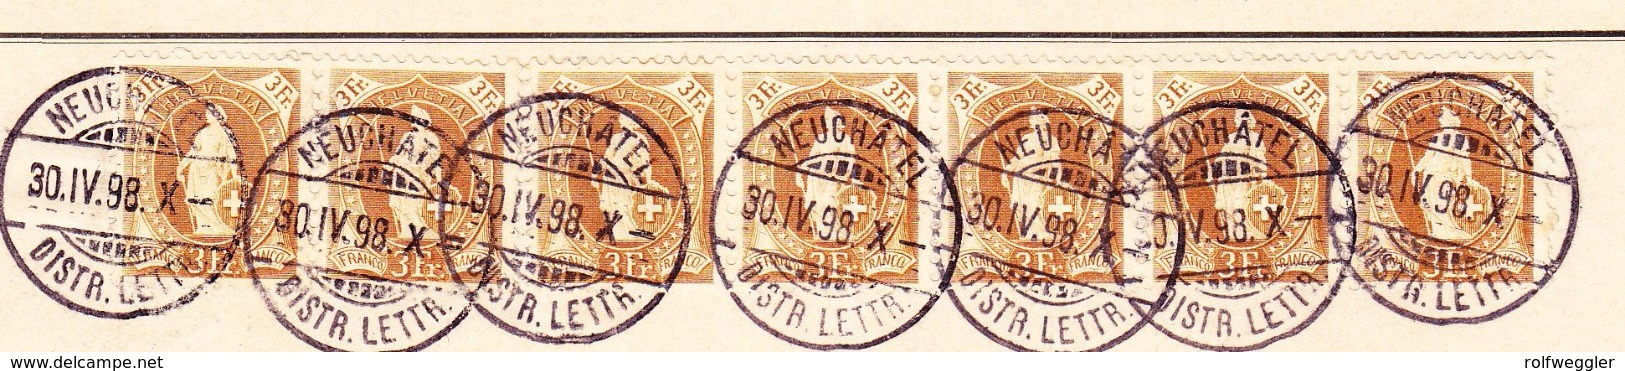 Schweiz Stehende 7 Stück 3Fr. Neuchatel 30.4.1898 Postverwaltung Bordereau - Lettres & Documents